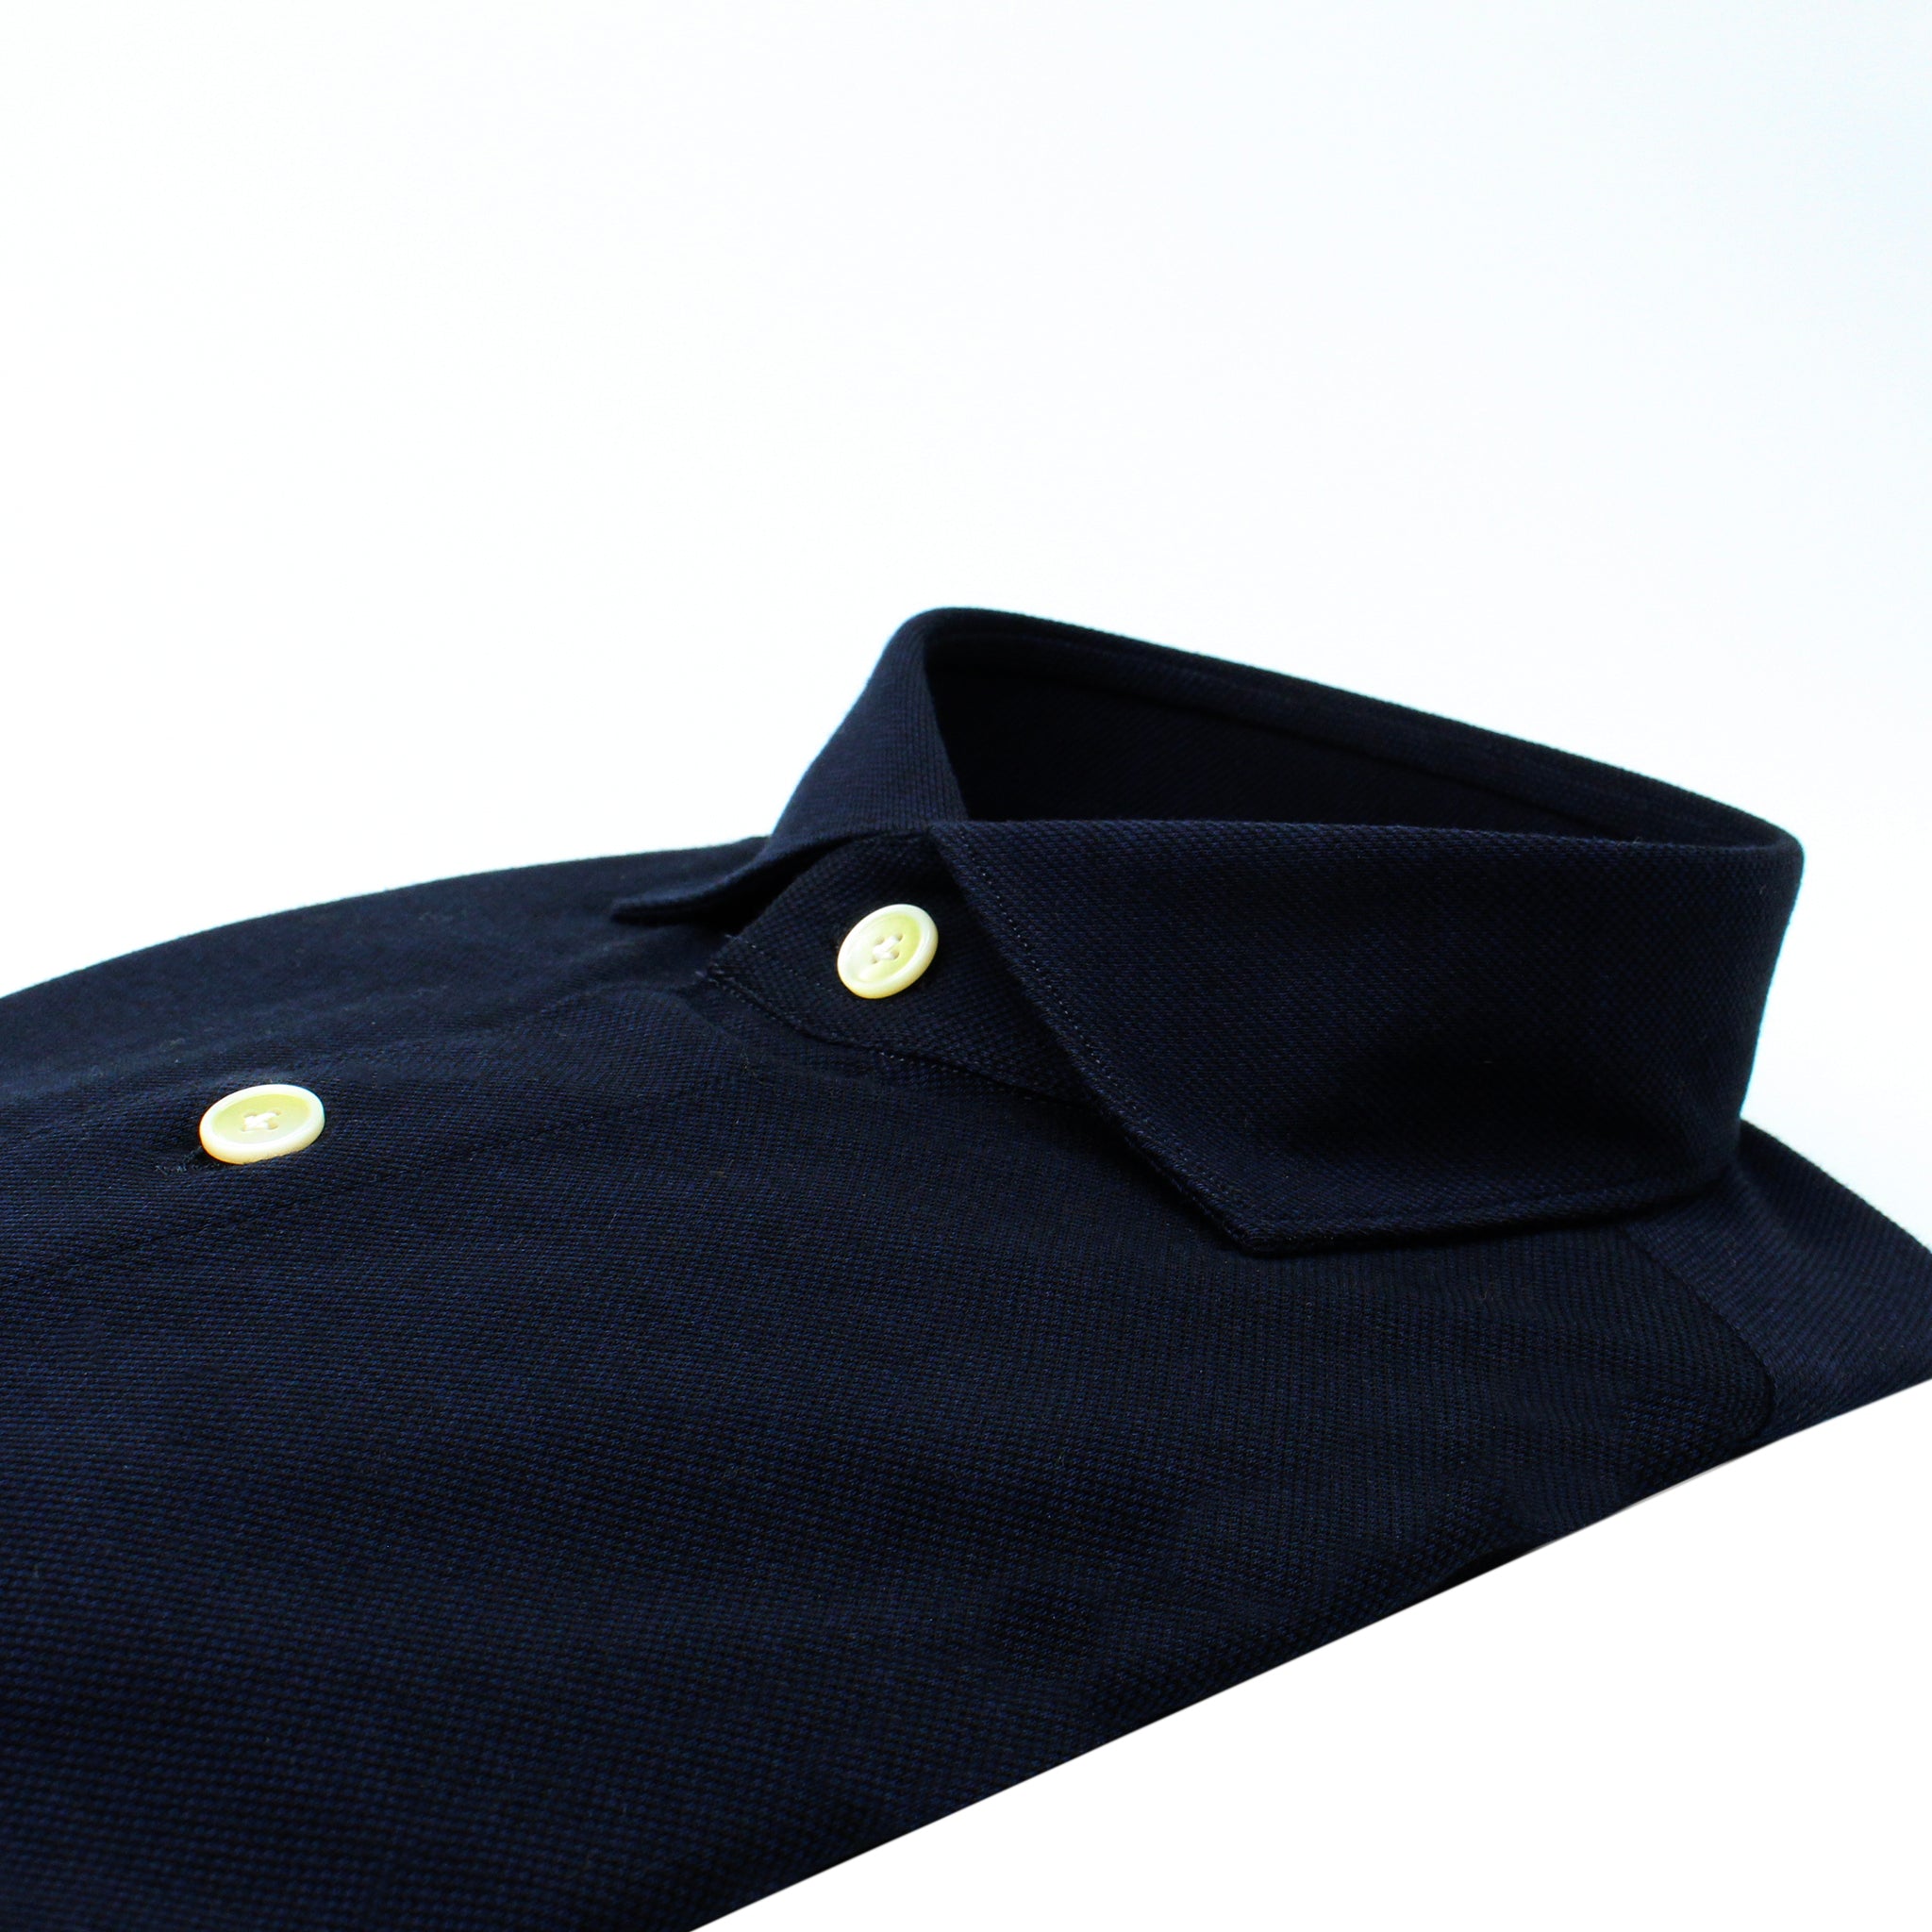 Toronto slim fit sport shirt in dark blue cotton jersey